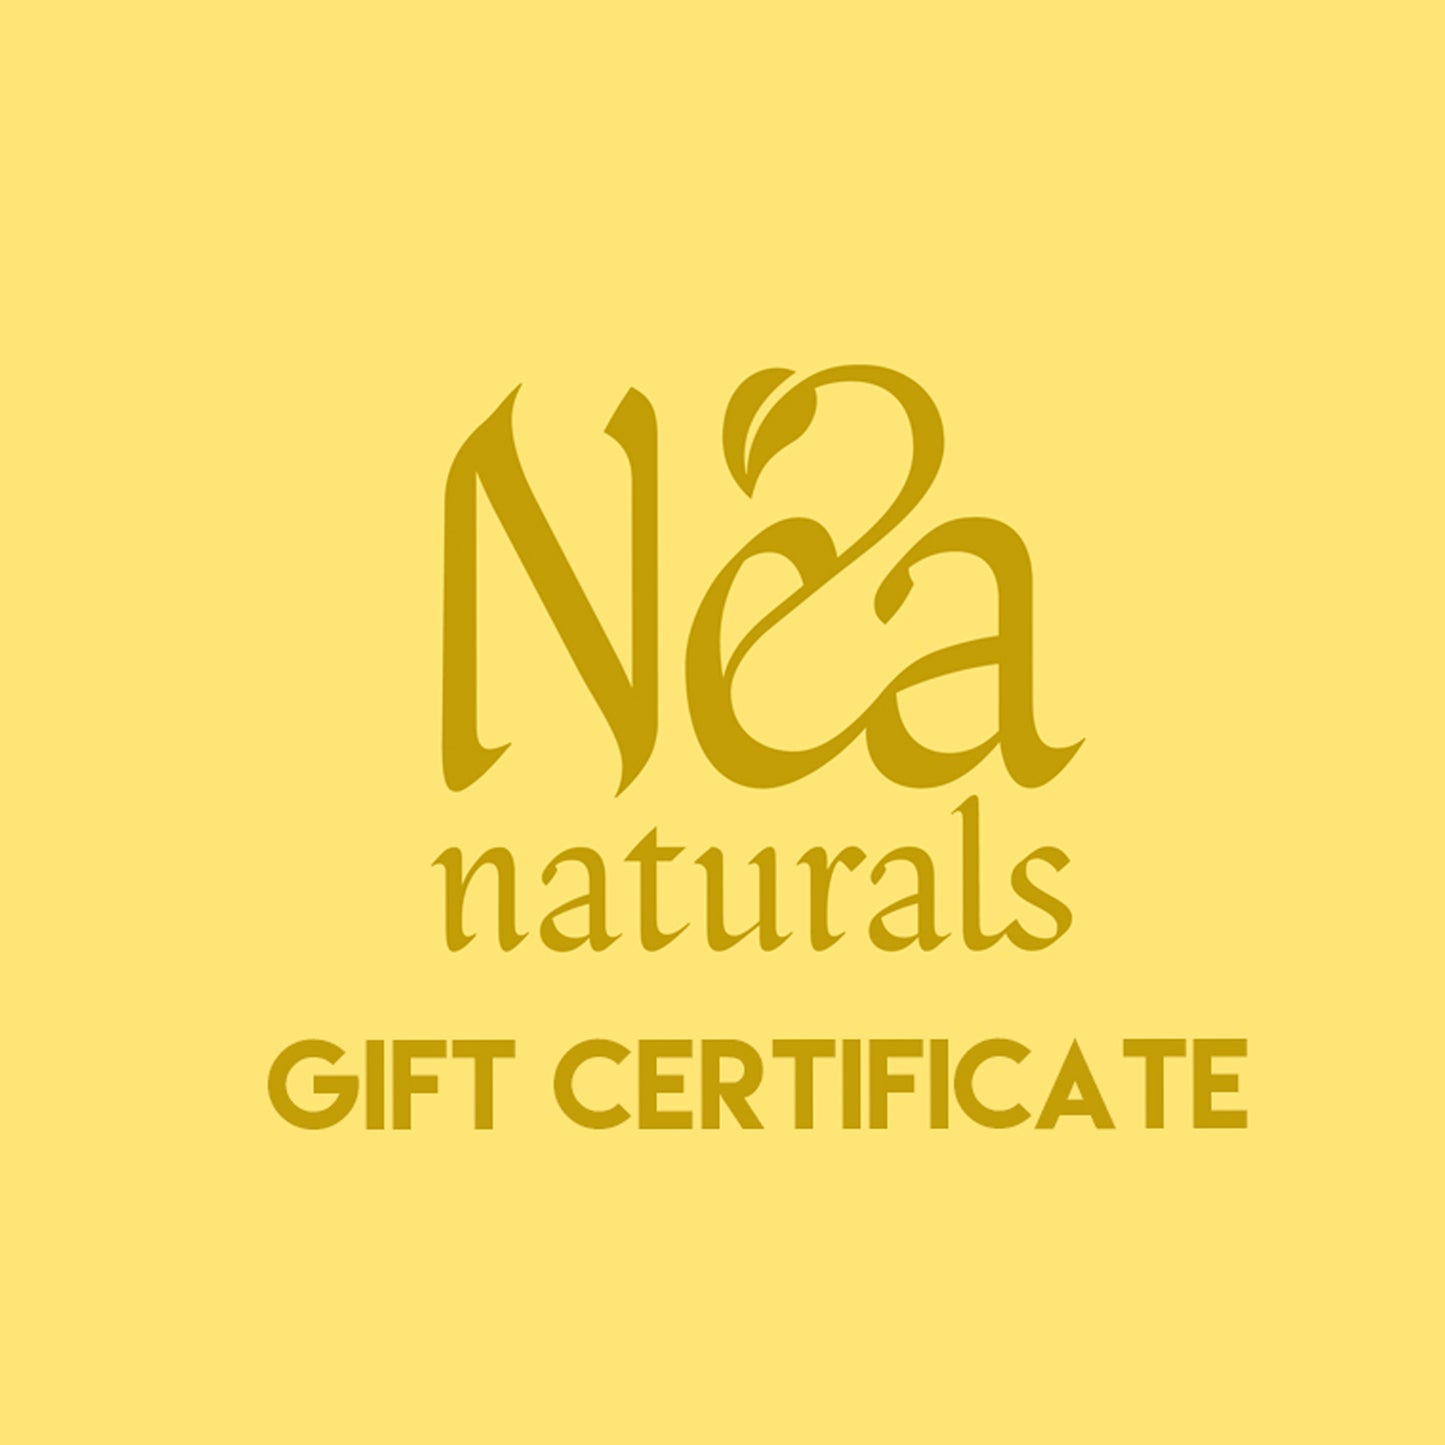 Nea Naturals Gift Certificate